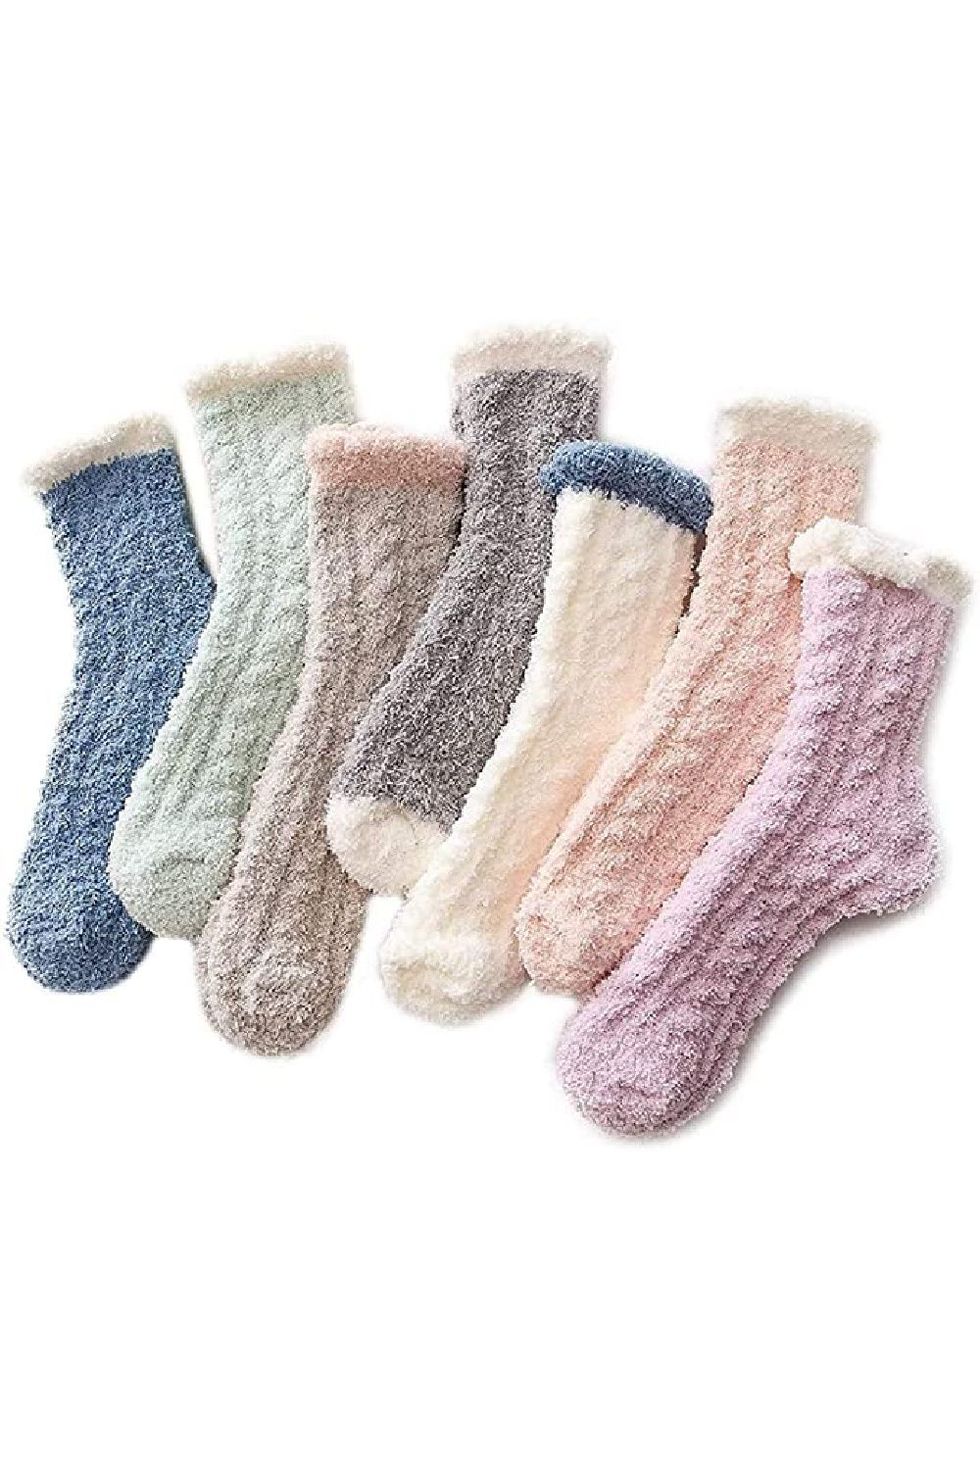 Cozy Socks for Women, Cozy Gifts for Women, Warm Socks Women